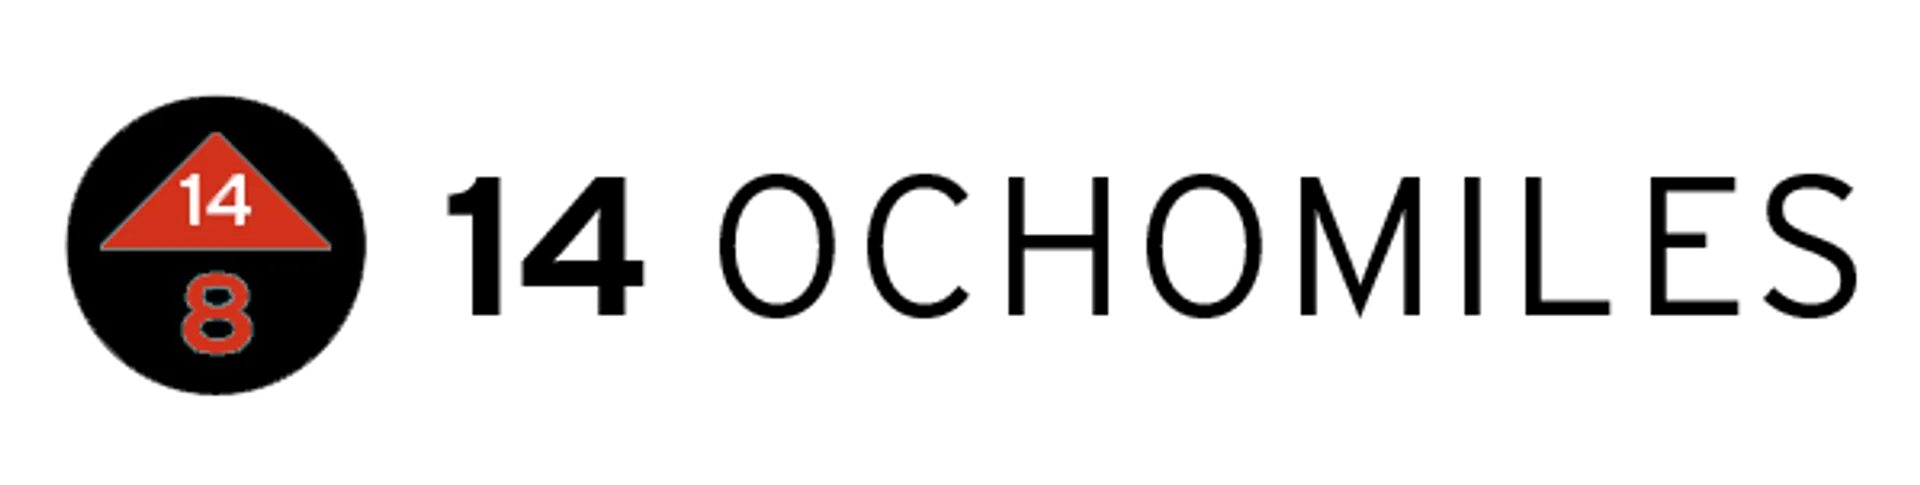 14 OCHOMILES logo